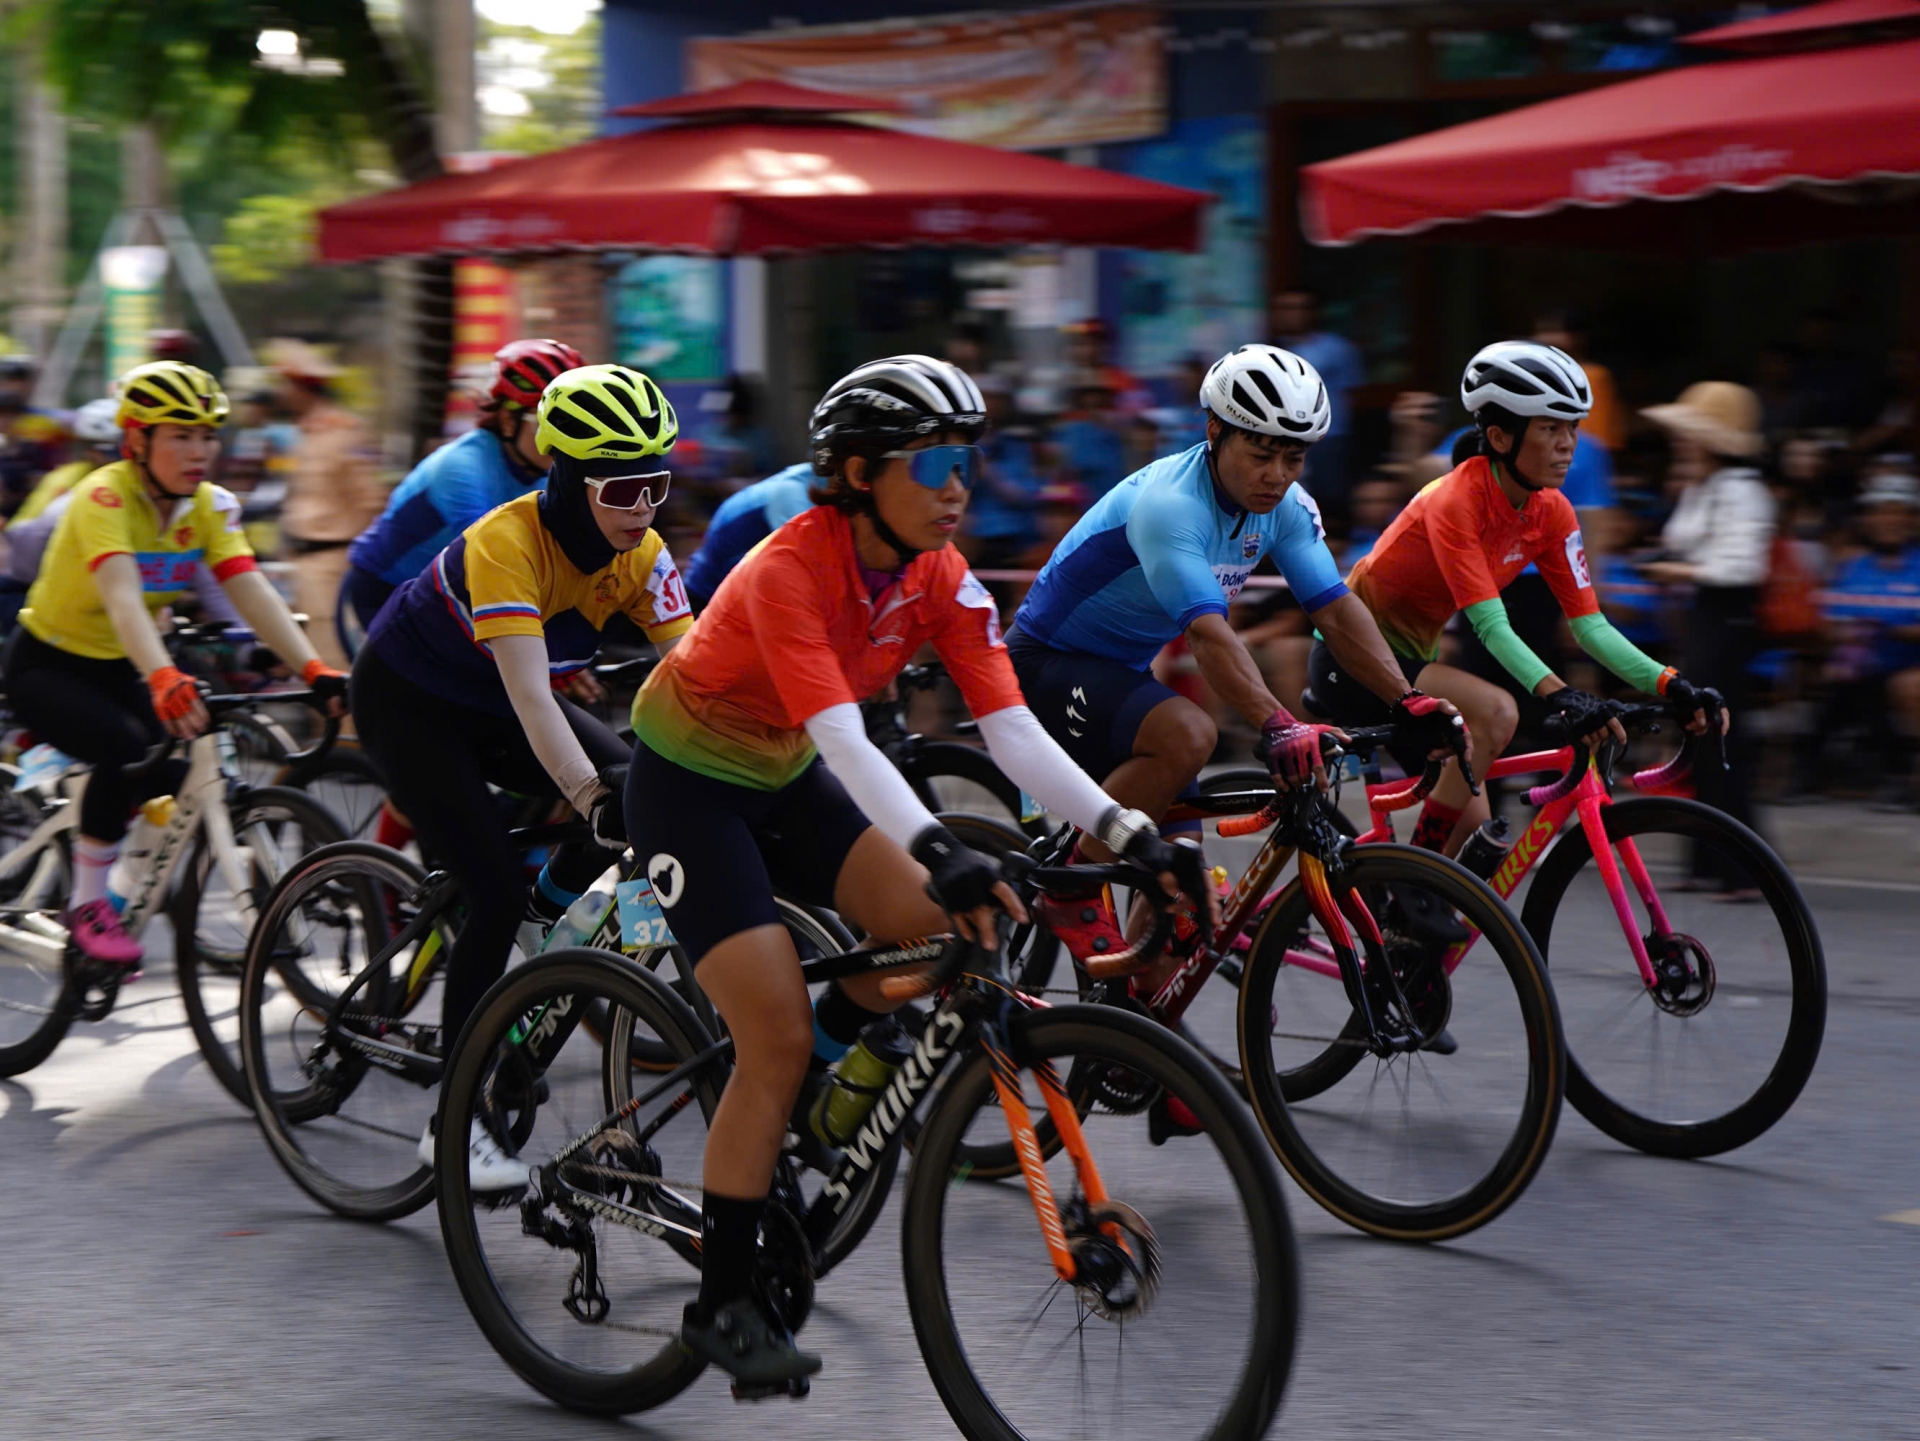 Giải đua nhằm cổ vũ cho phong trào tập luyện môn xe đạp thể thao đang ngày càng phát triển ở Quảng Trị nói riêng và cả nước nói chung. Bên cạnh đó, còn tôn vinh giá trị của hòa bình.